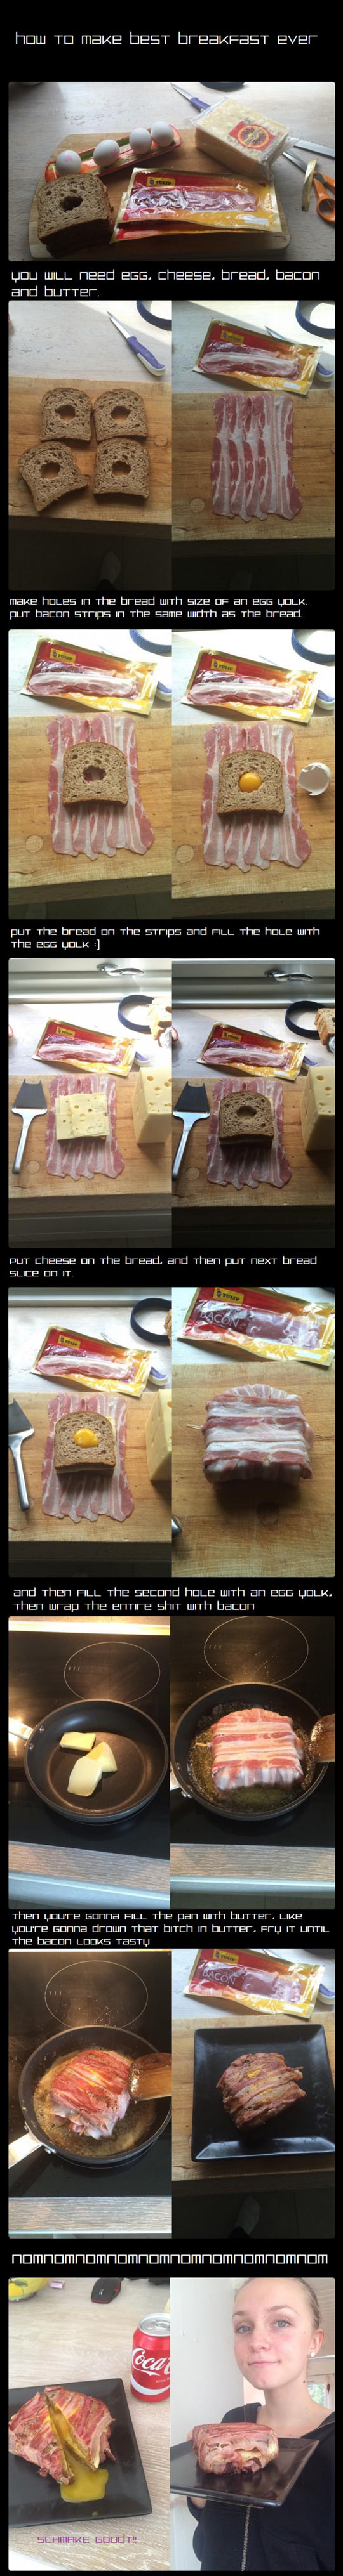 cool-breakfast-idea-bacon